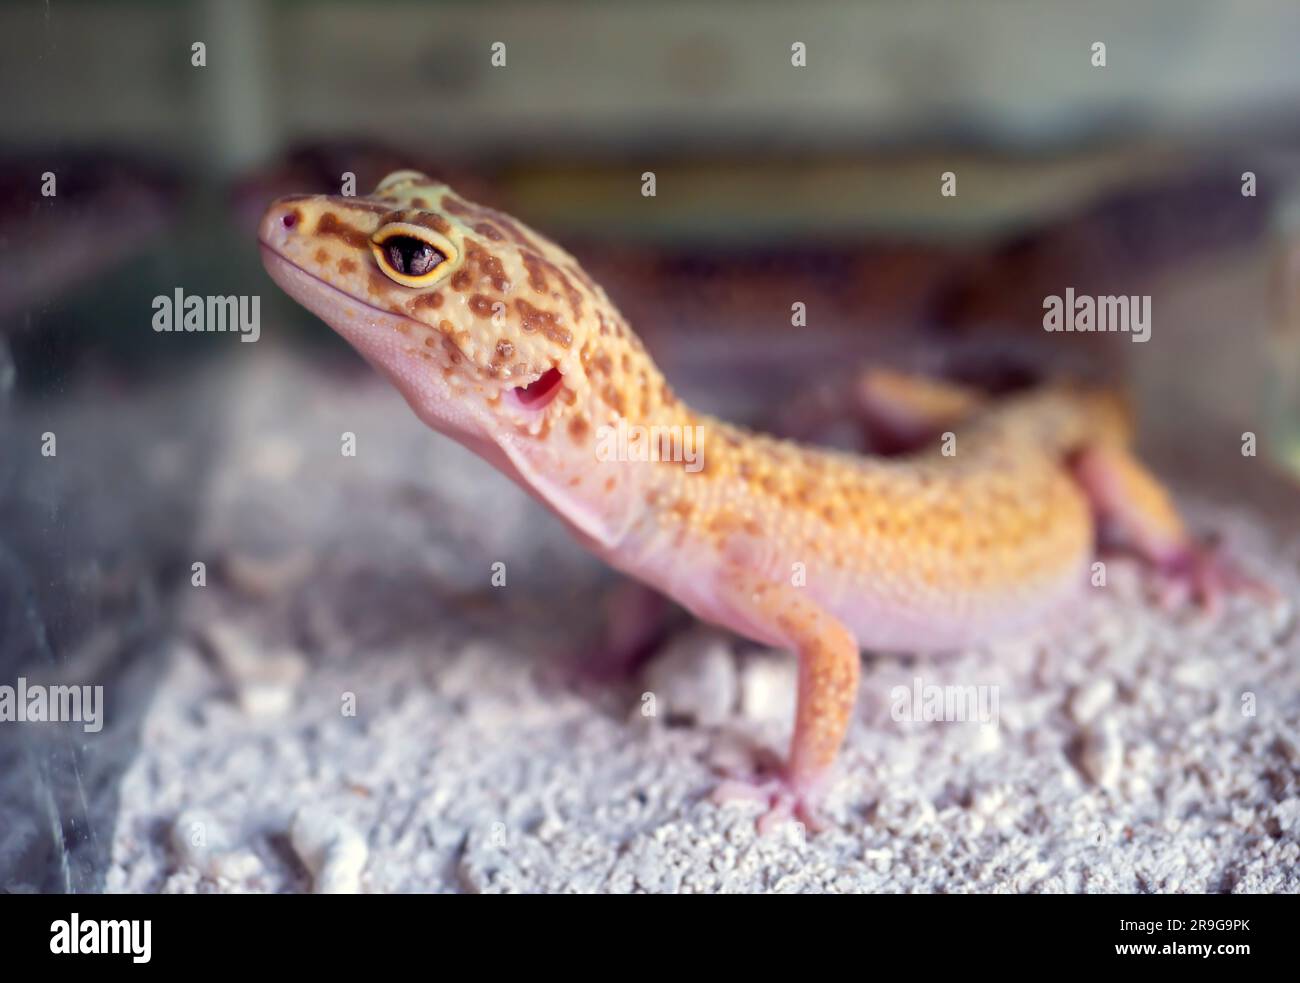 Primo piano di un piccolo geco giallo (Gekko gecko) Foto Stock